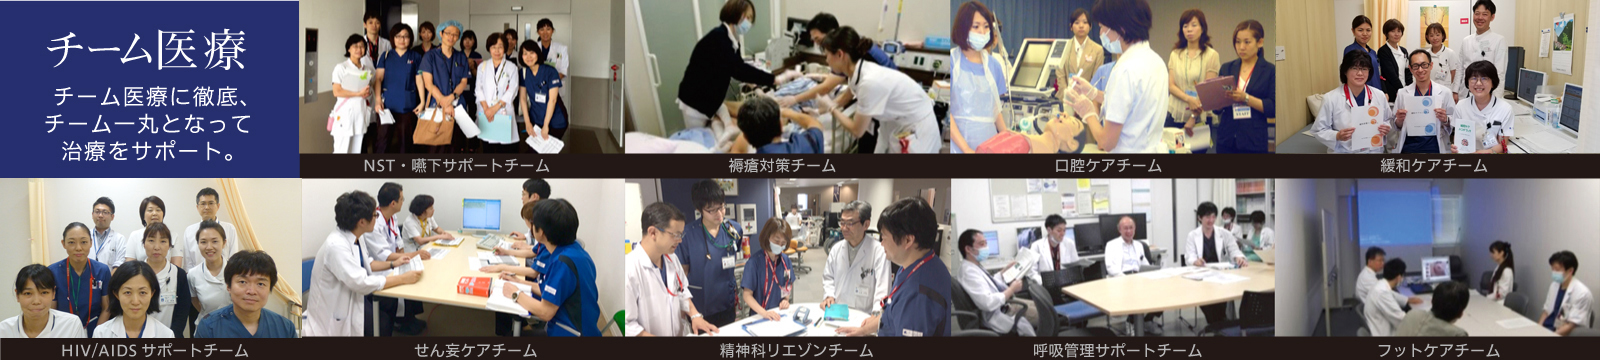 神戸市立医療センター中央市民病院 診療科・部門